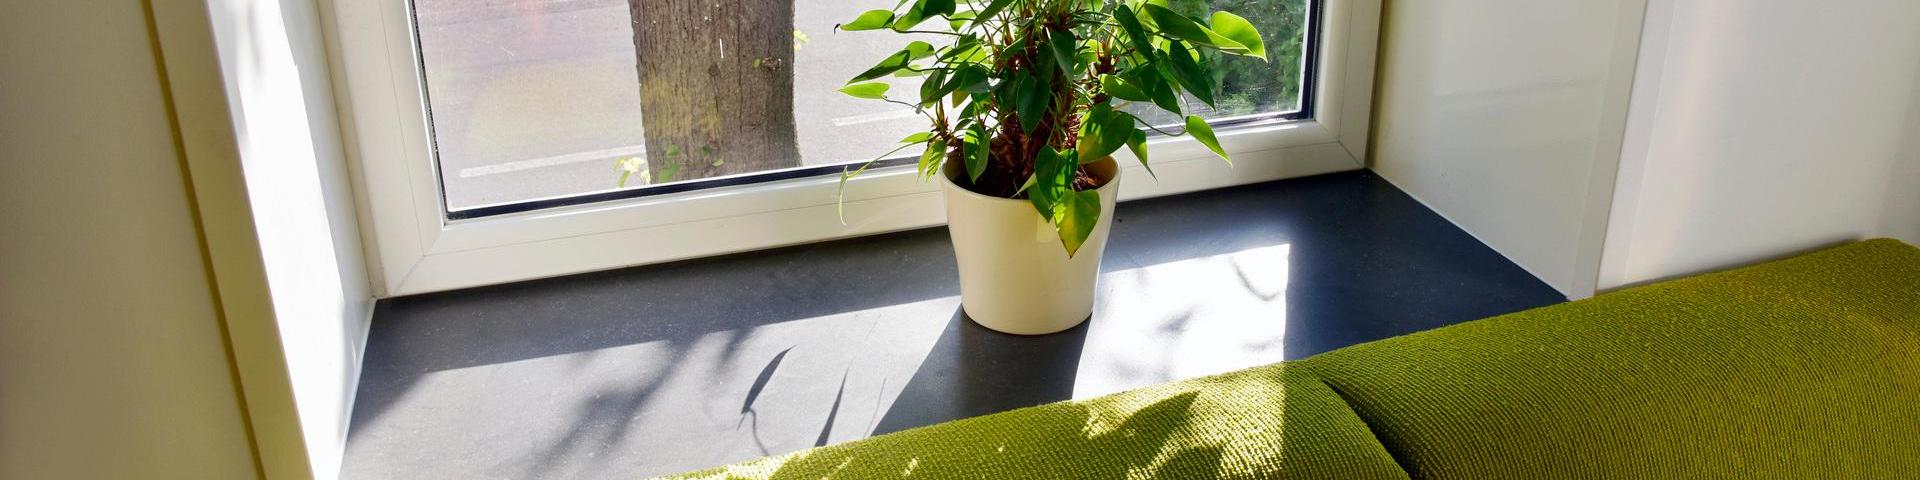 Plant op vensterbank in een zonnige woning